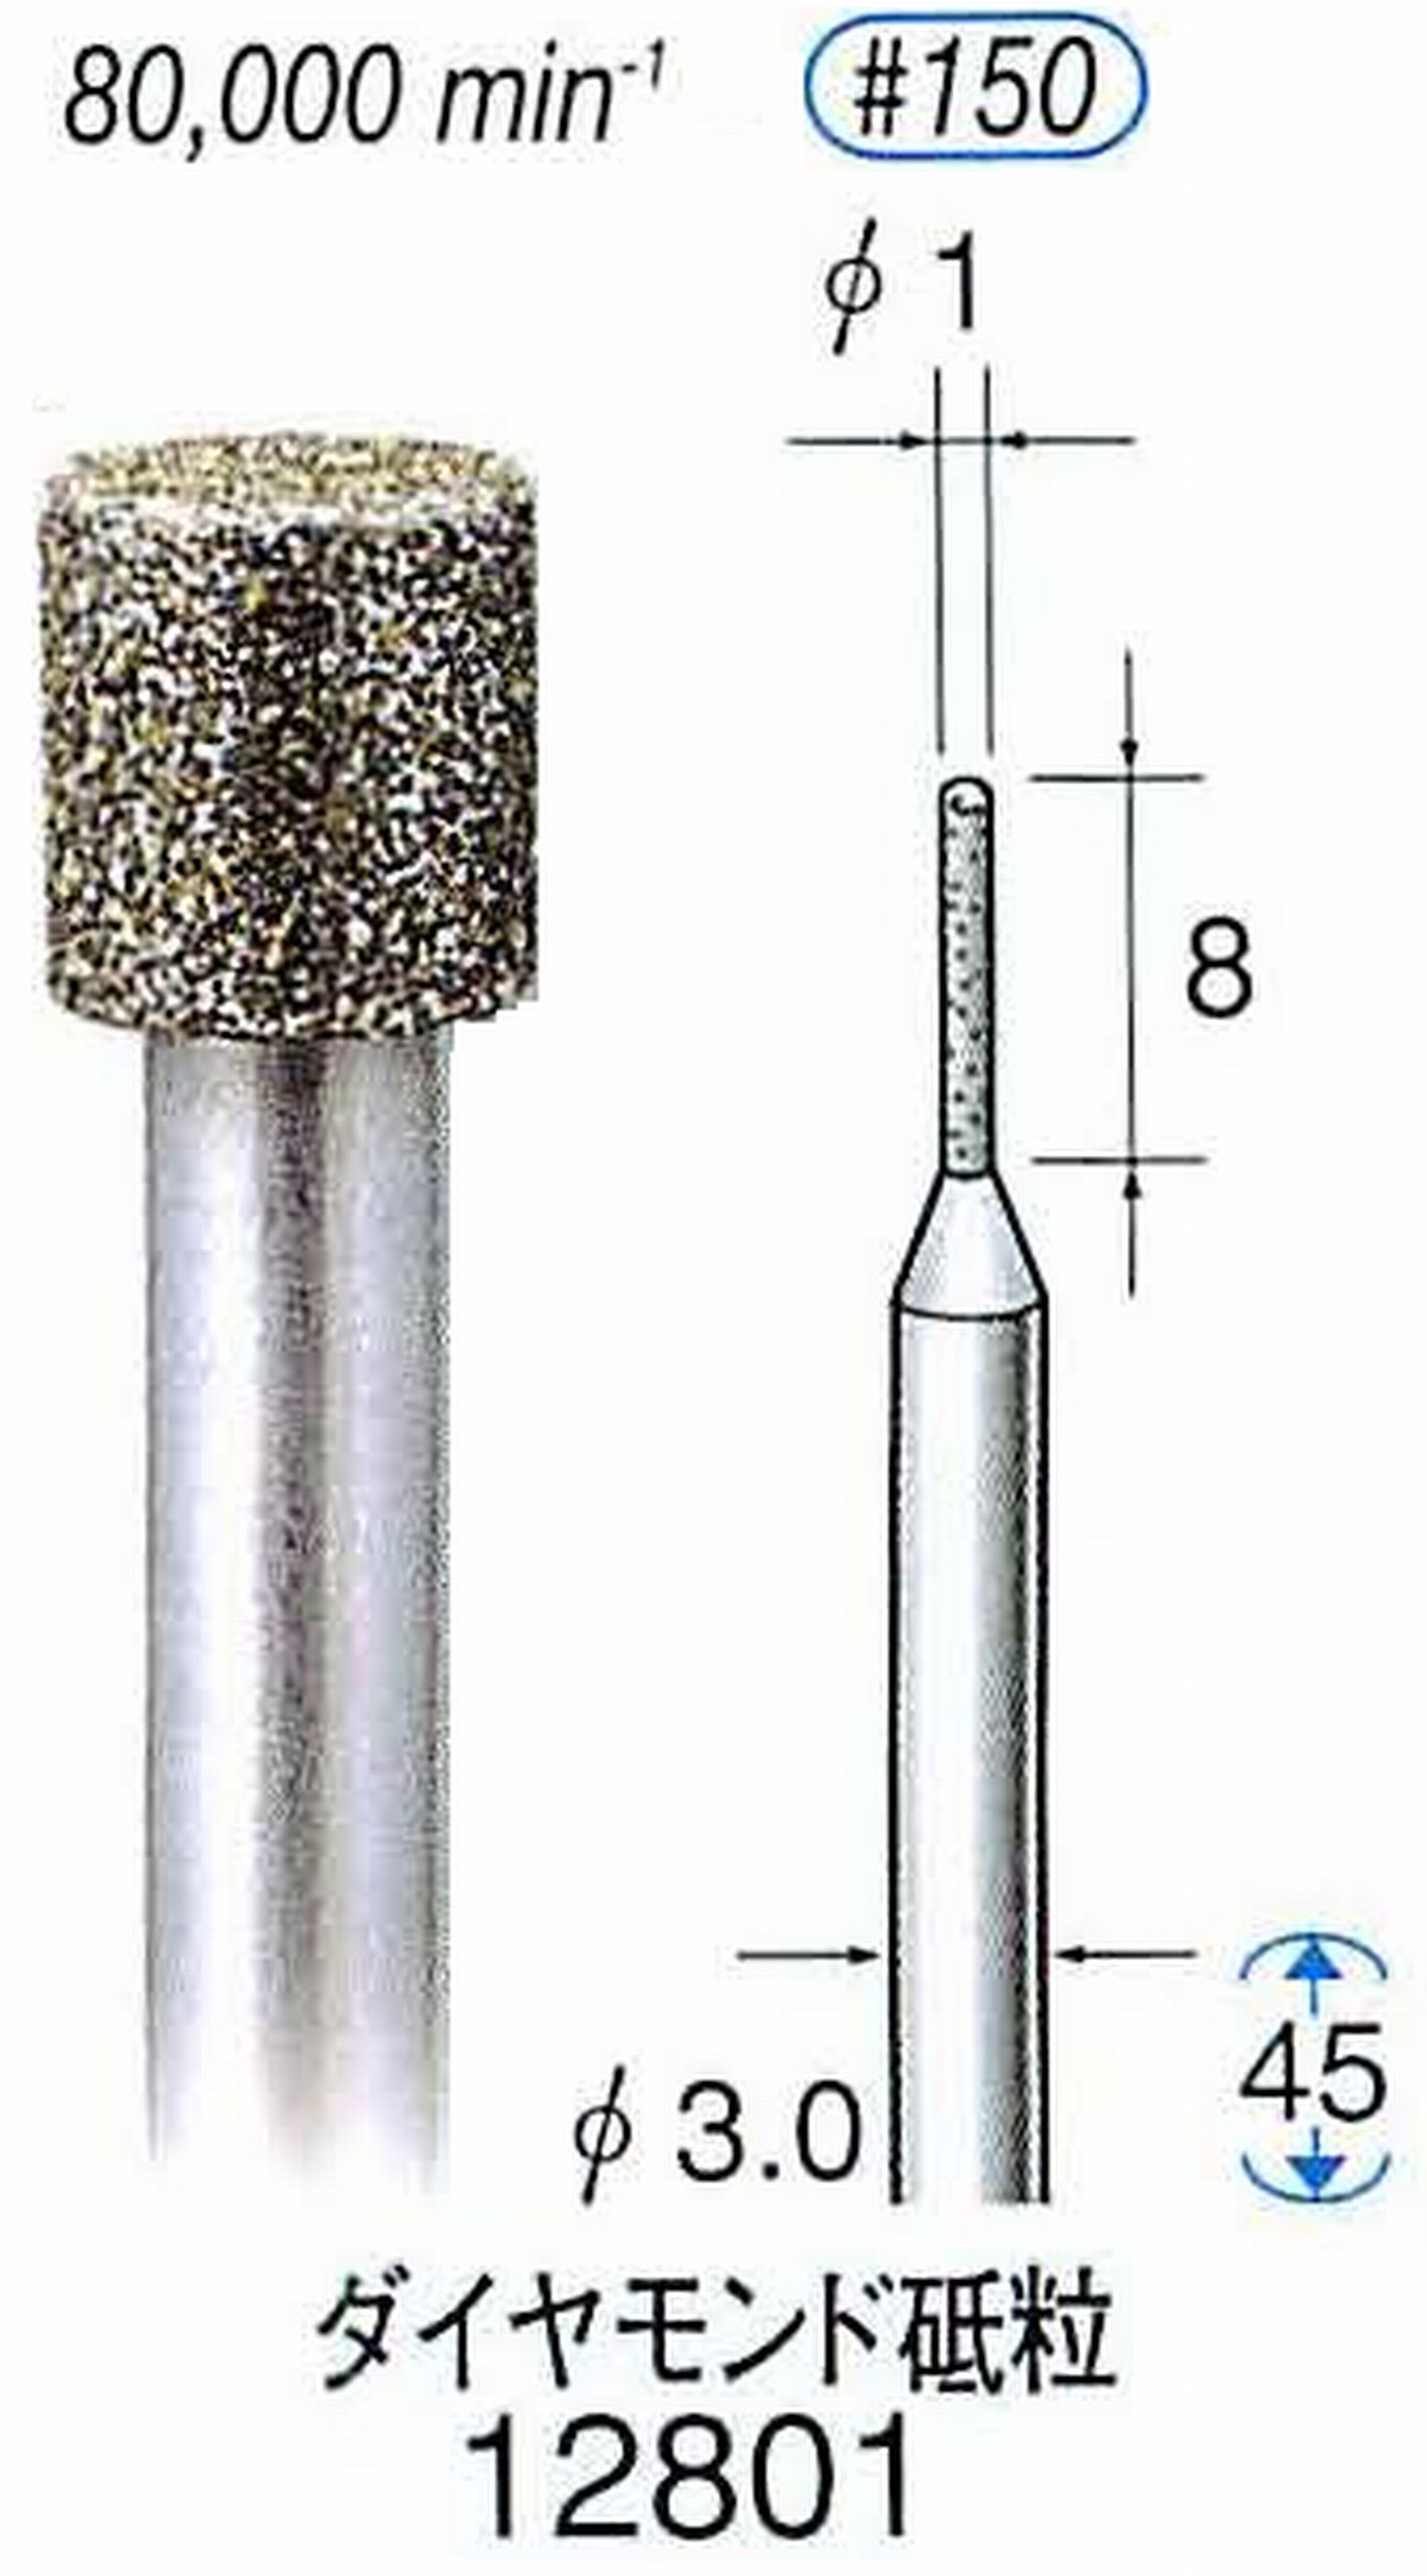 ナカニシ/NAKANISHI クラフト・ホビー用ダイヤモンドバー ダイヤモンド砥粒 軸径(シャンク)φ3.0mm 12801